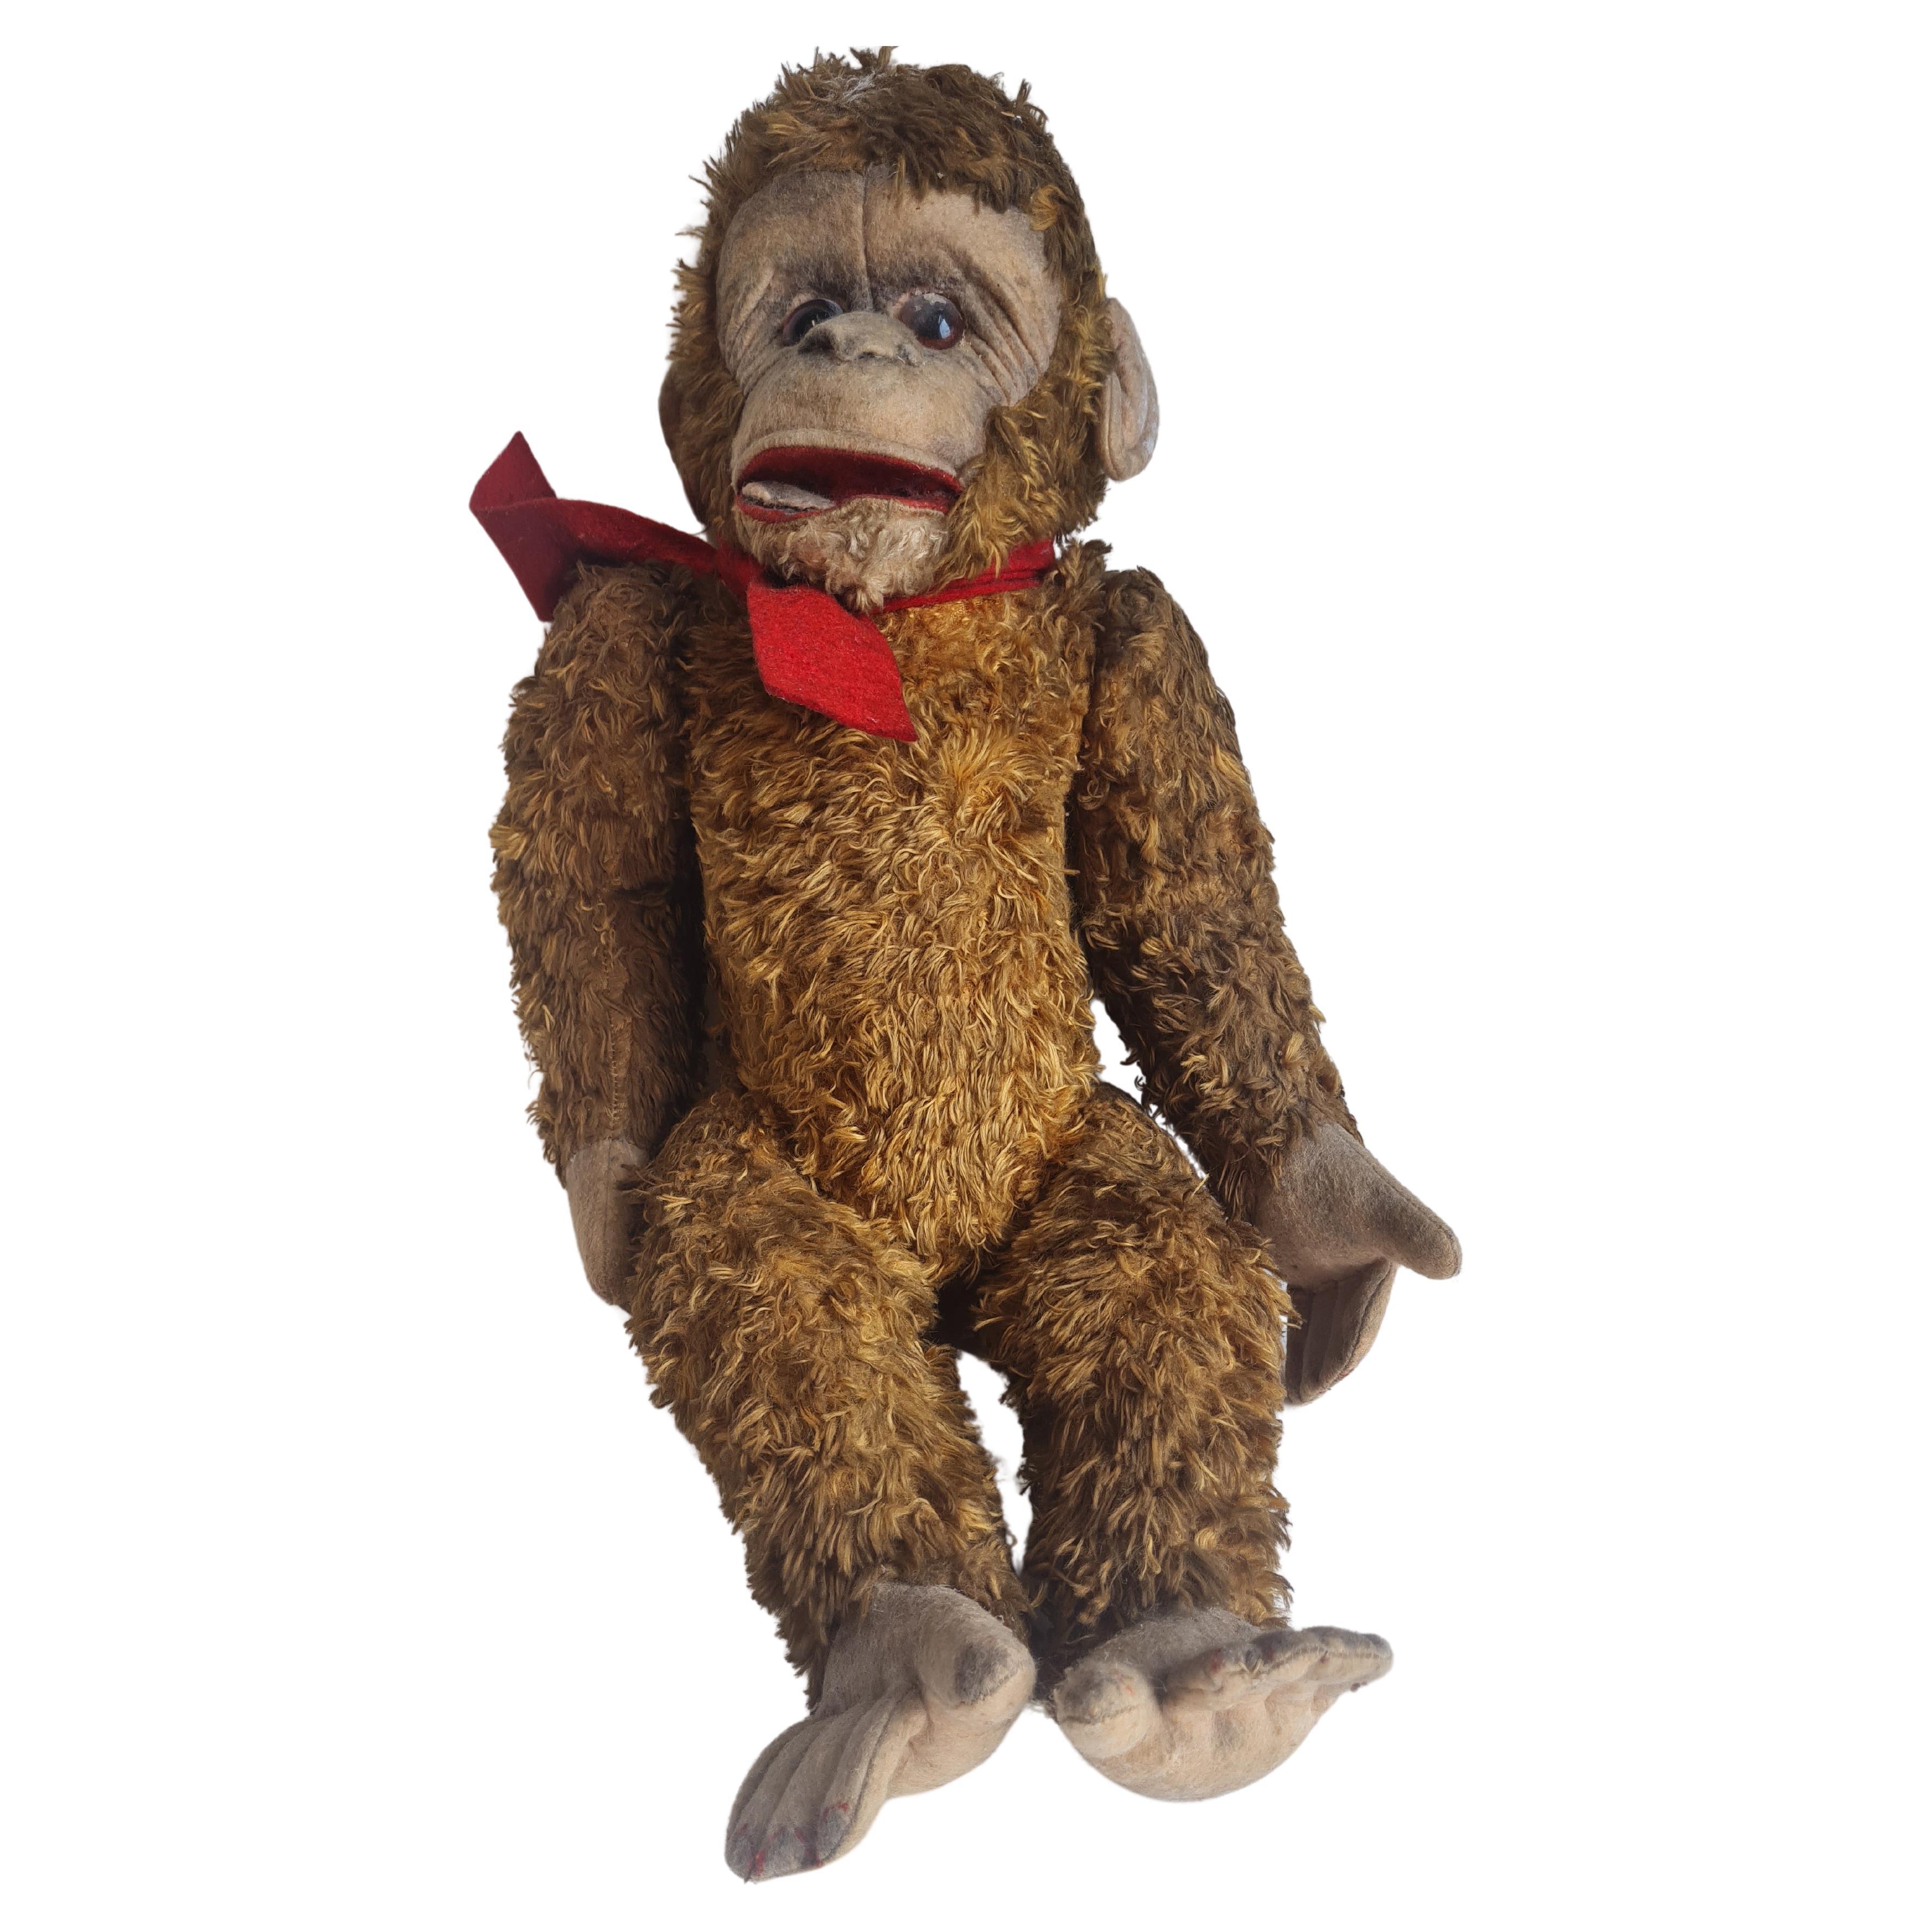 Monkey de Steiff Jocko, chimpanzee allemand en mohair assis des années 1950 en vente